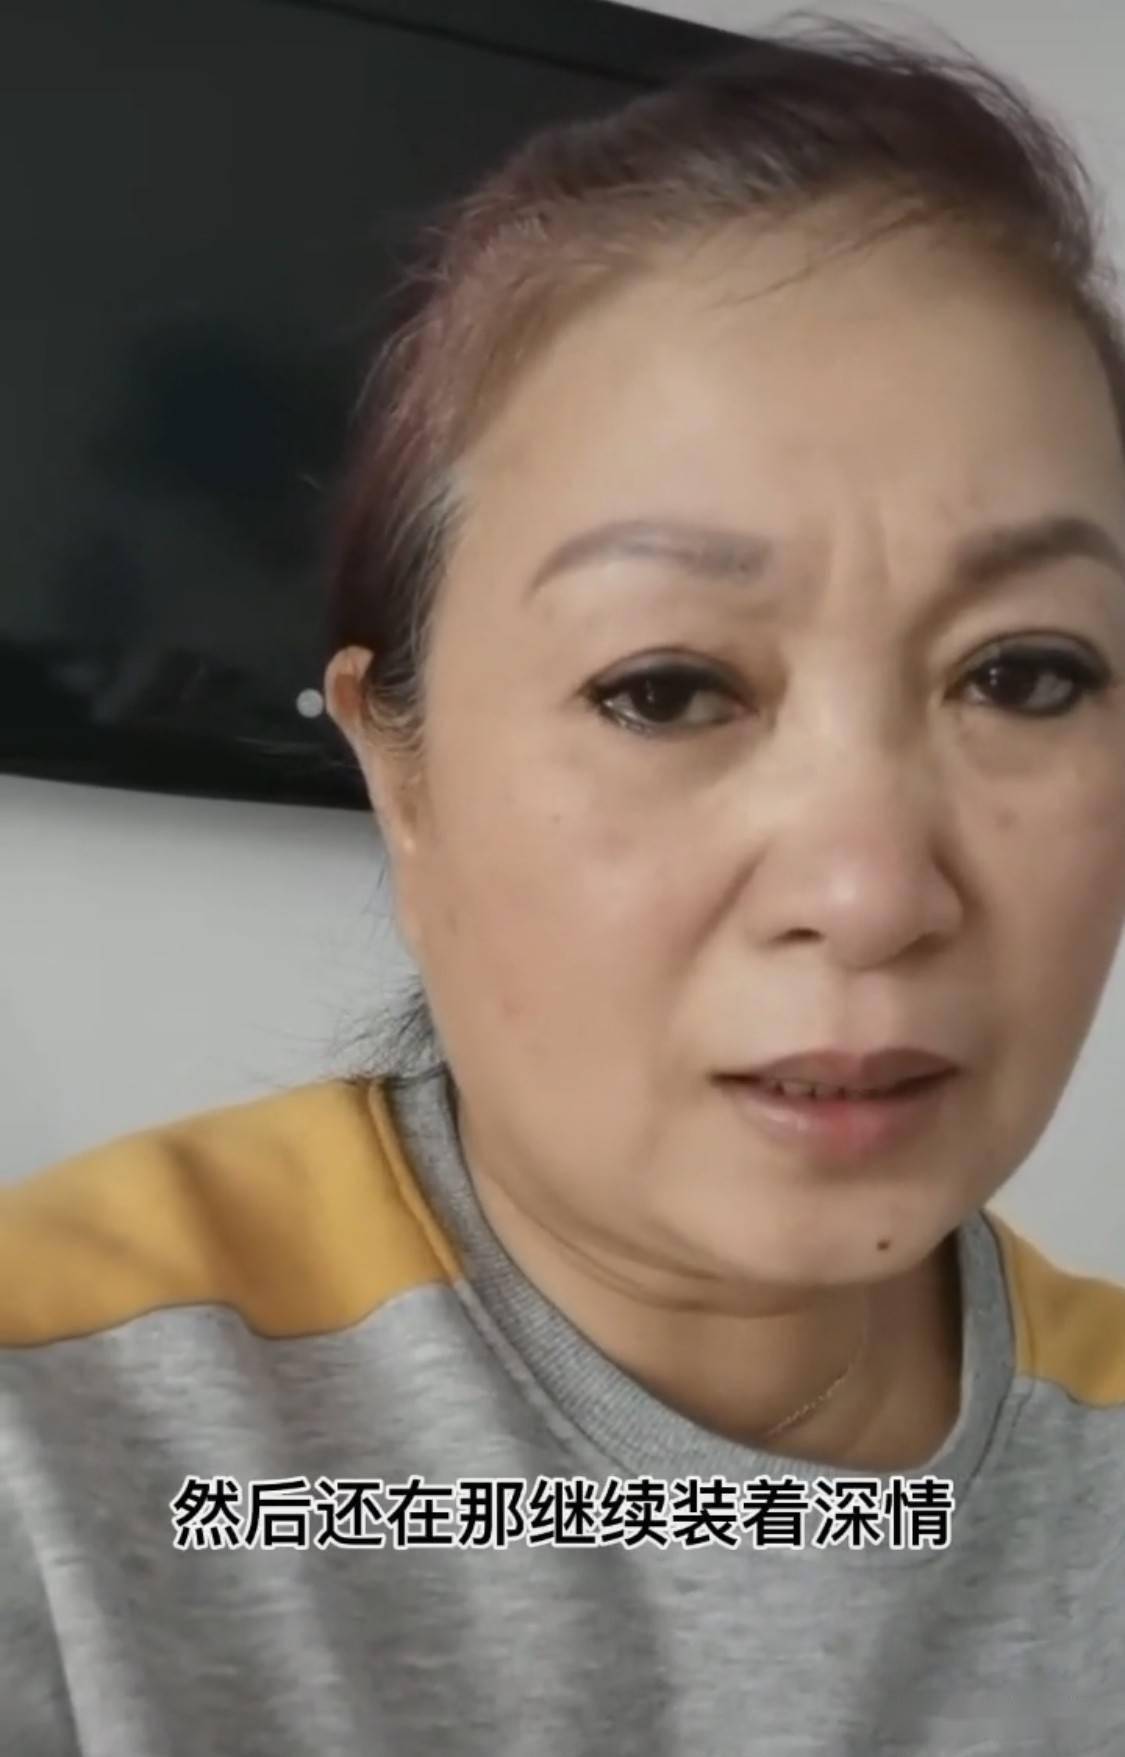 1月27日,杨柳的母亲在某视频平台上痛诉徐世南发的一切根本不是真的